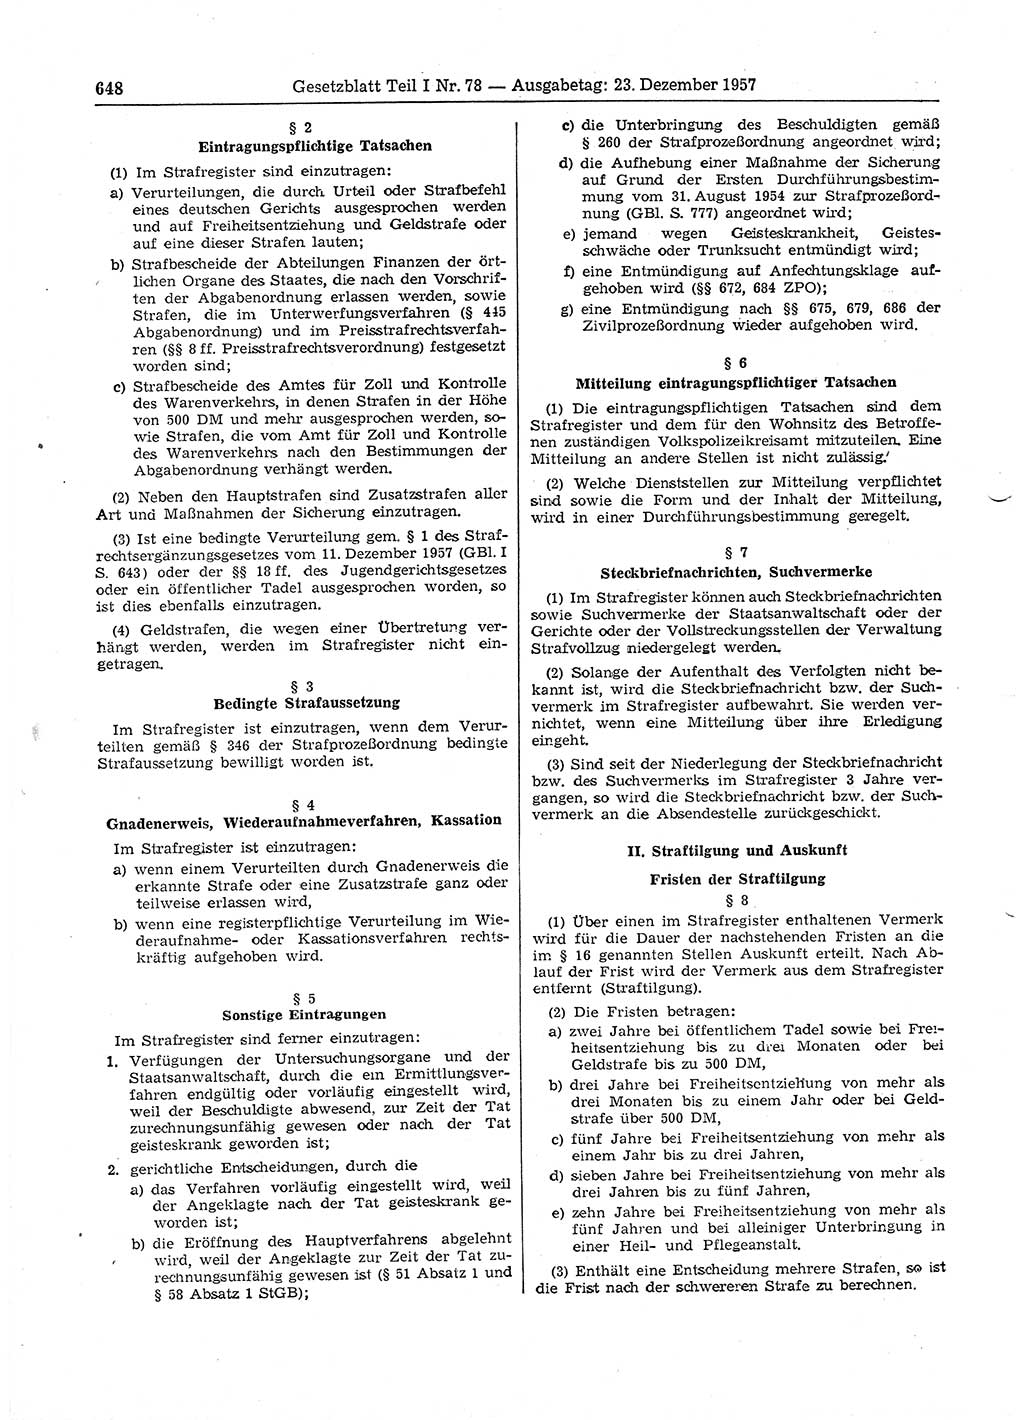 Gesetzblatt (GBl.) der Deutschen Demokratischen Republik (DDR) Teil Ⅰ 1957, Seite 648 (GBl. DDR Ⅰ 1957, S. 648)